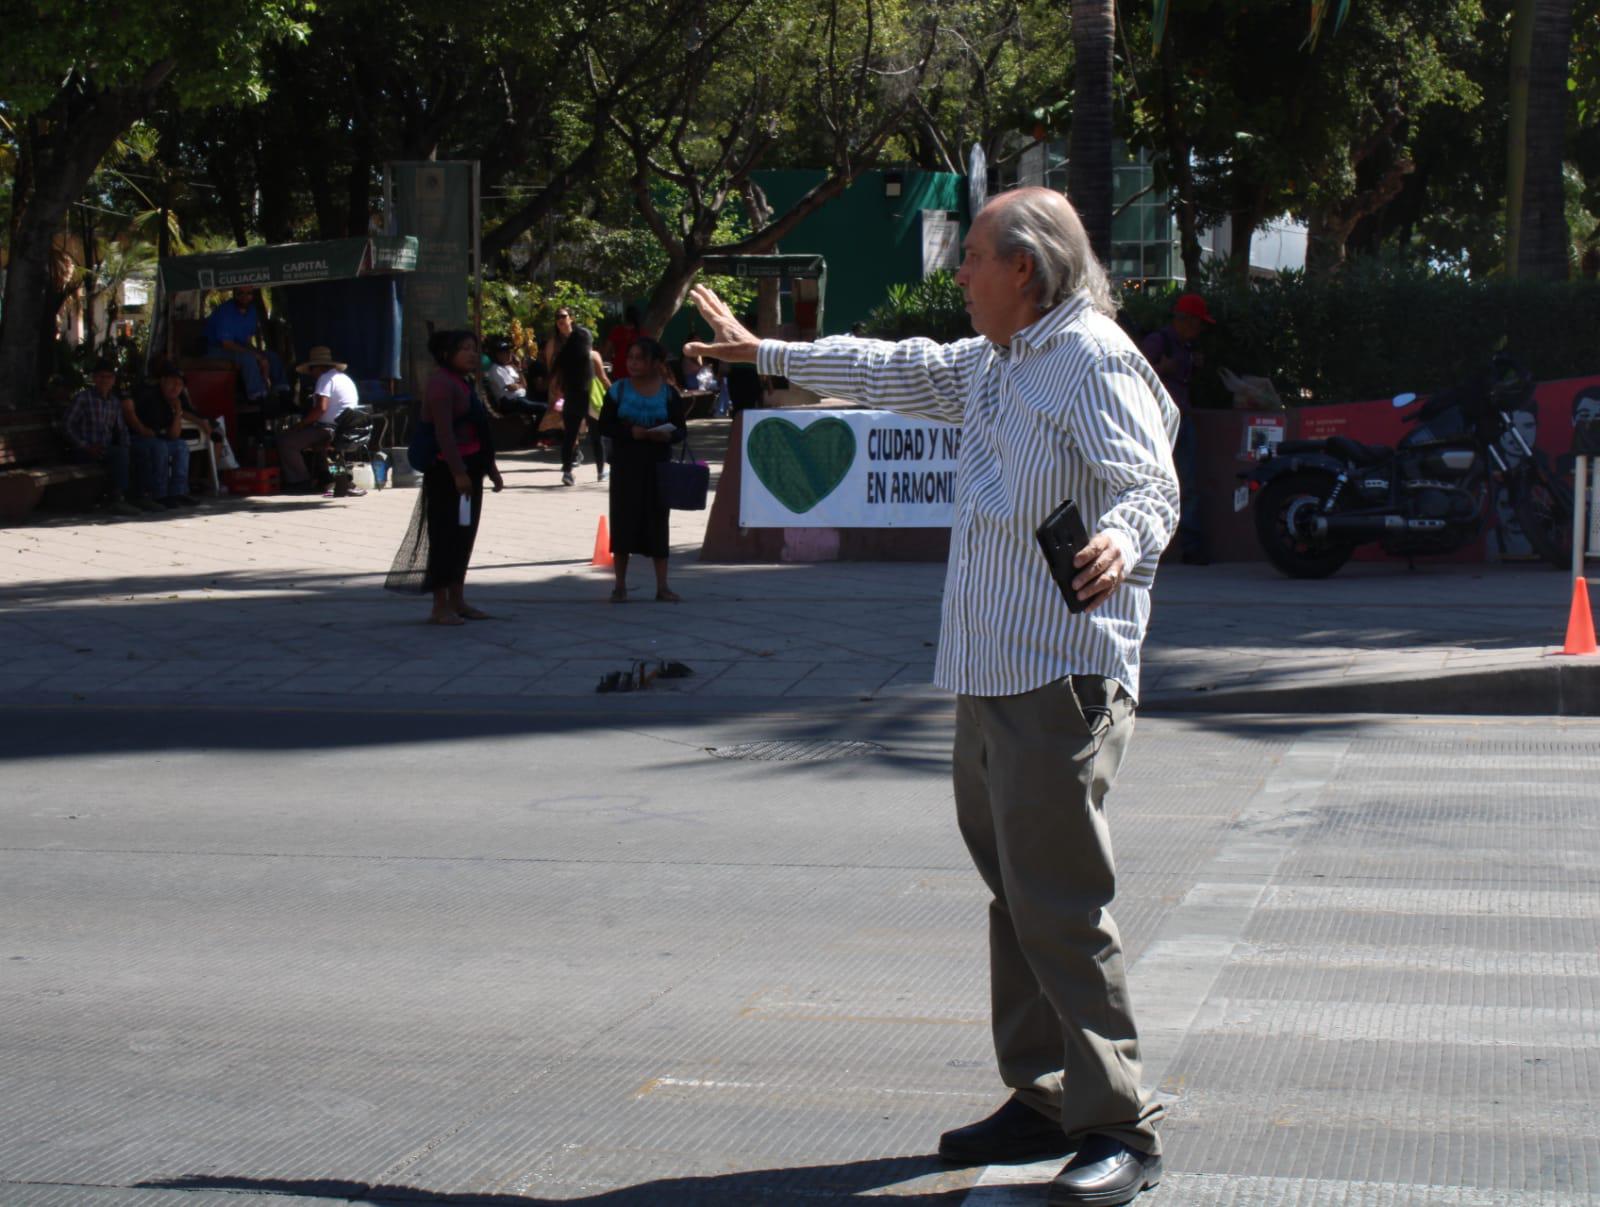 $!Protestan en Culiacán contra supuesta privatización de Jardín Botánico y Parque Ecológico